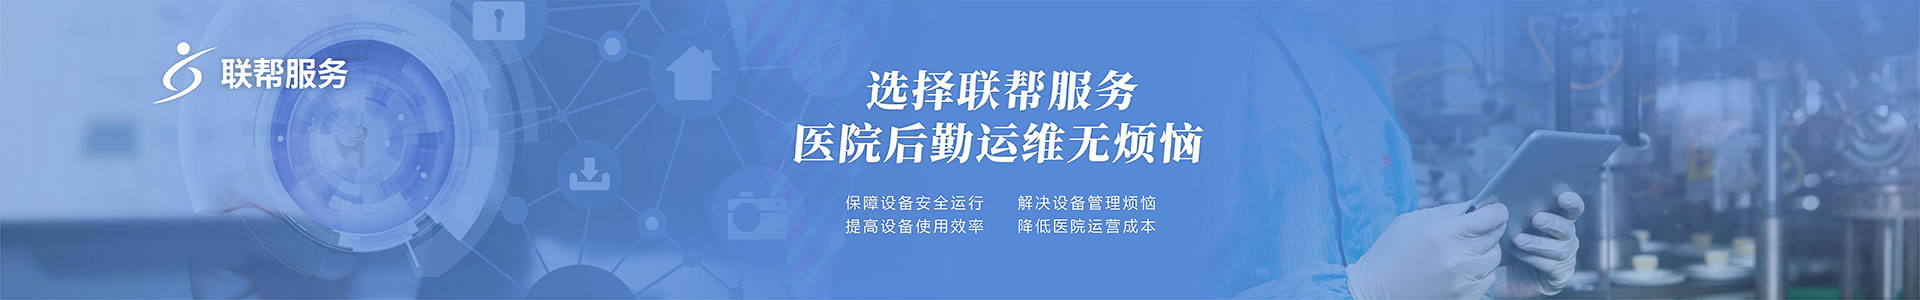 服务与支持通栏广告banner